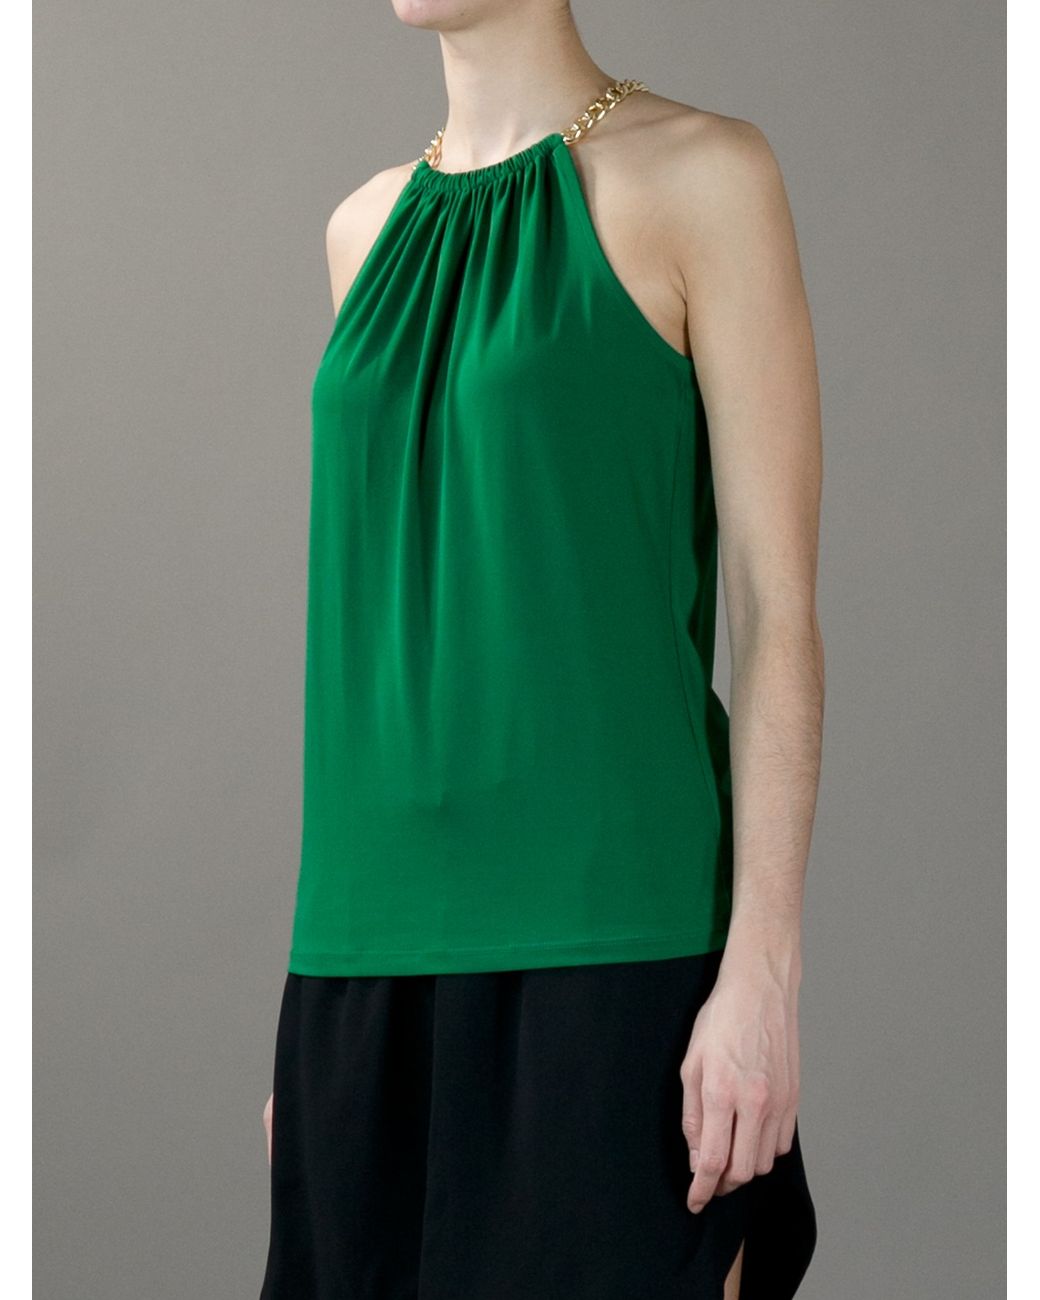 Michael Kors Women's Green Halter Neck Top